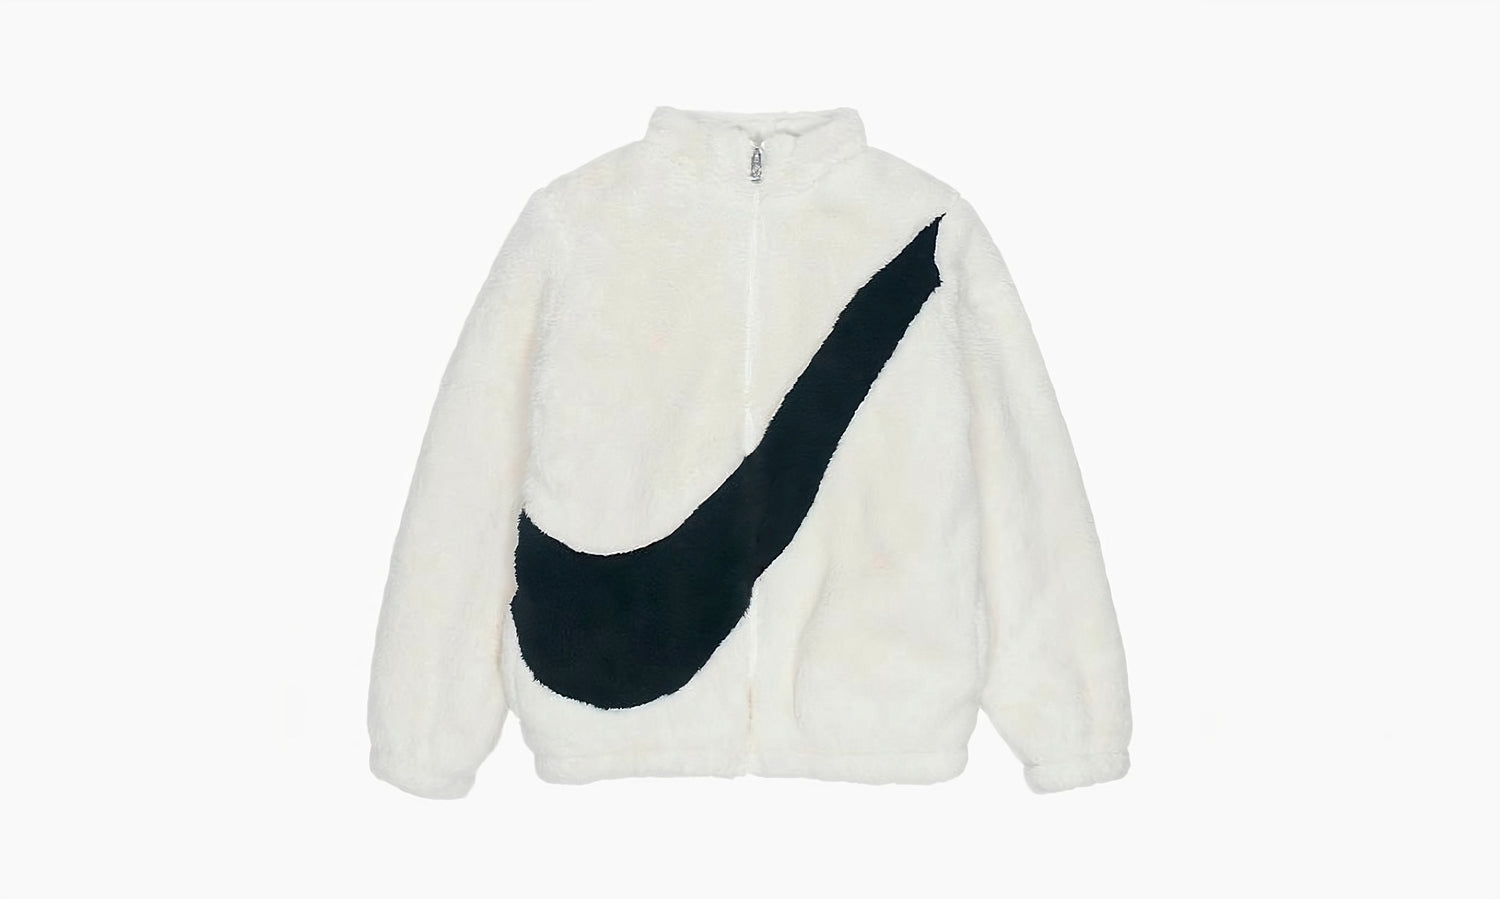 Nike Swoosh Fleece Jacket “White” - CU6559 238 | Grailshop